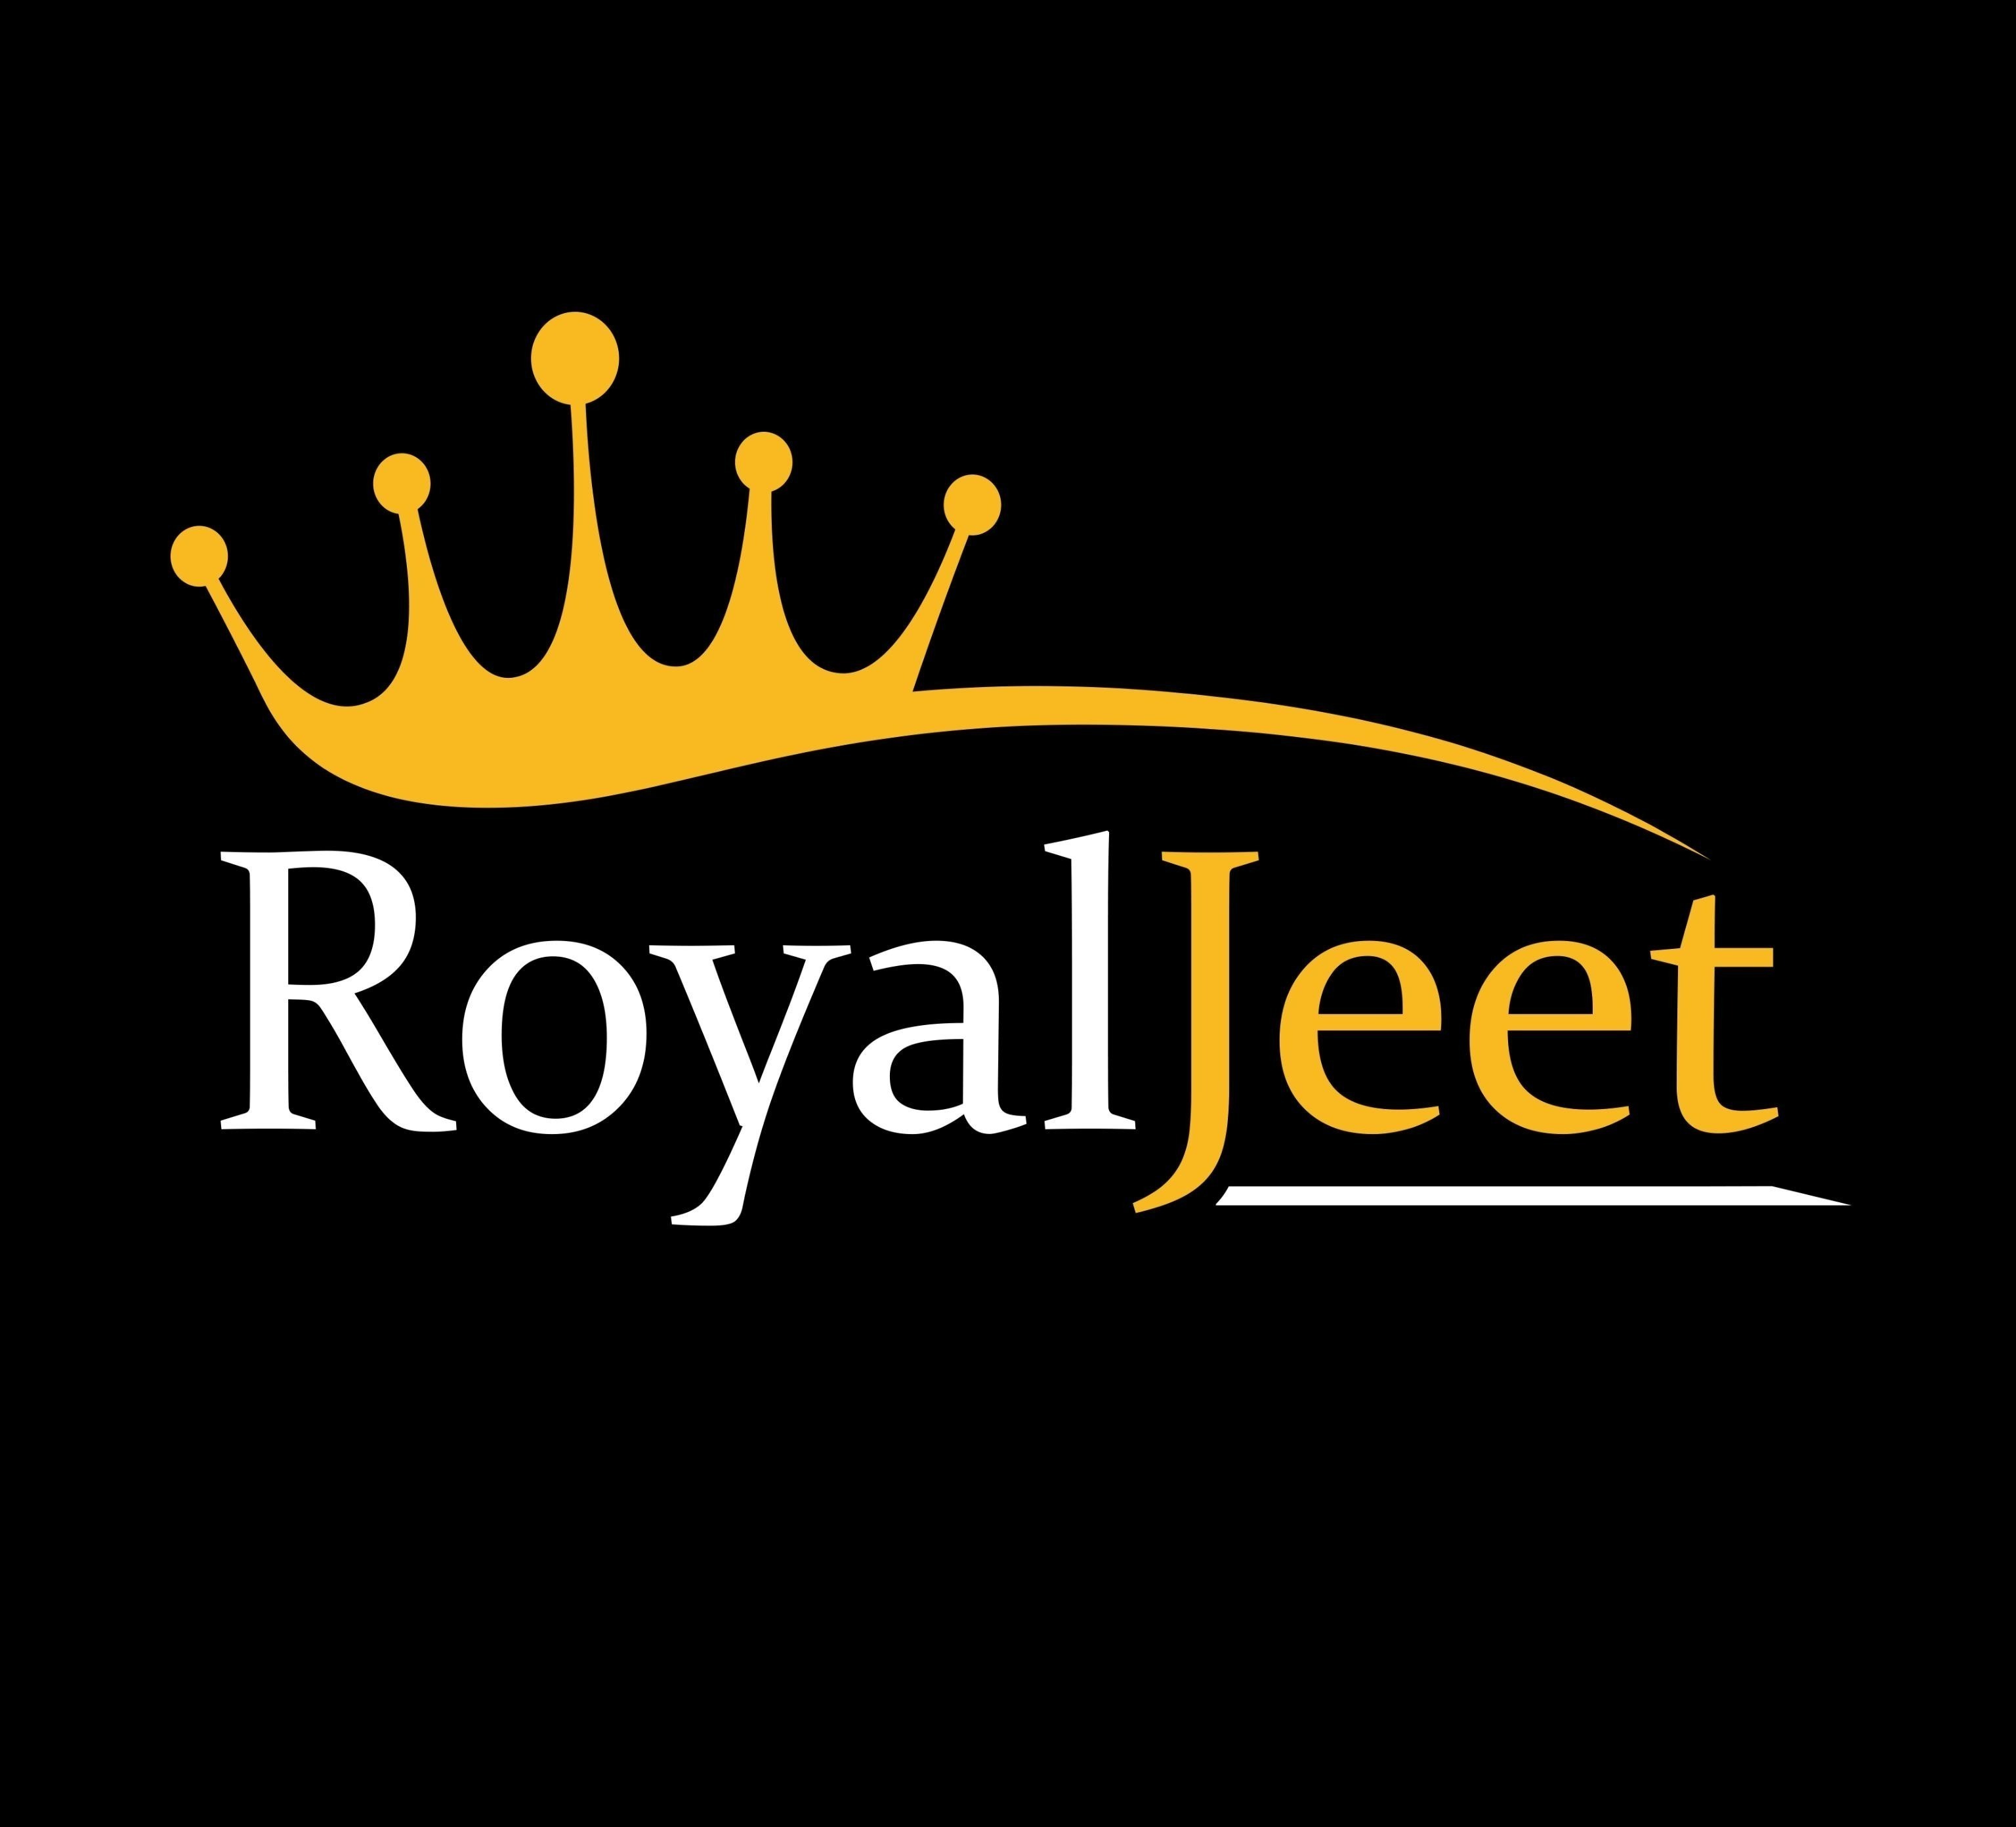 Royaljeet